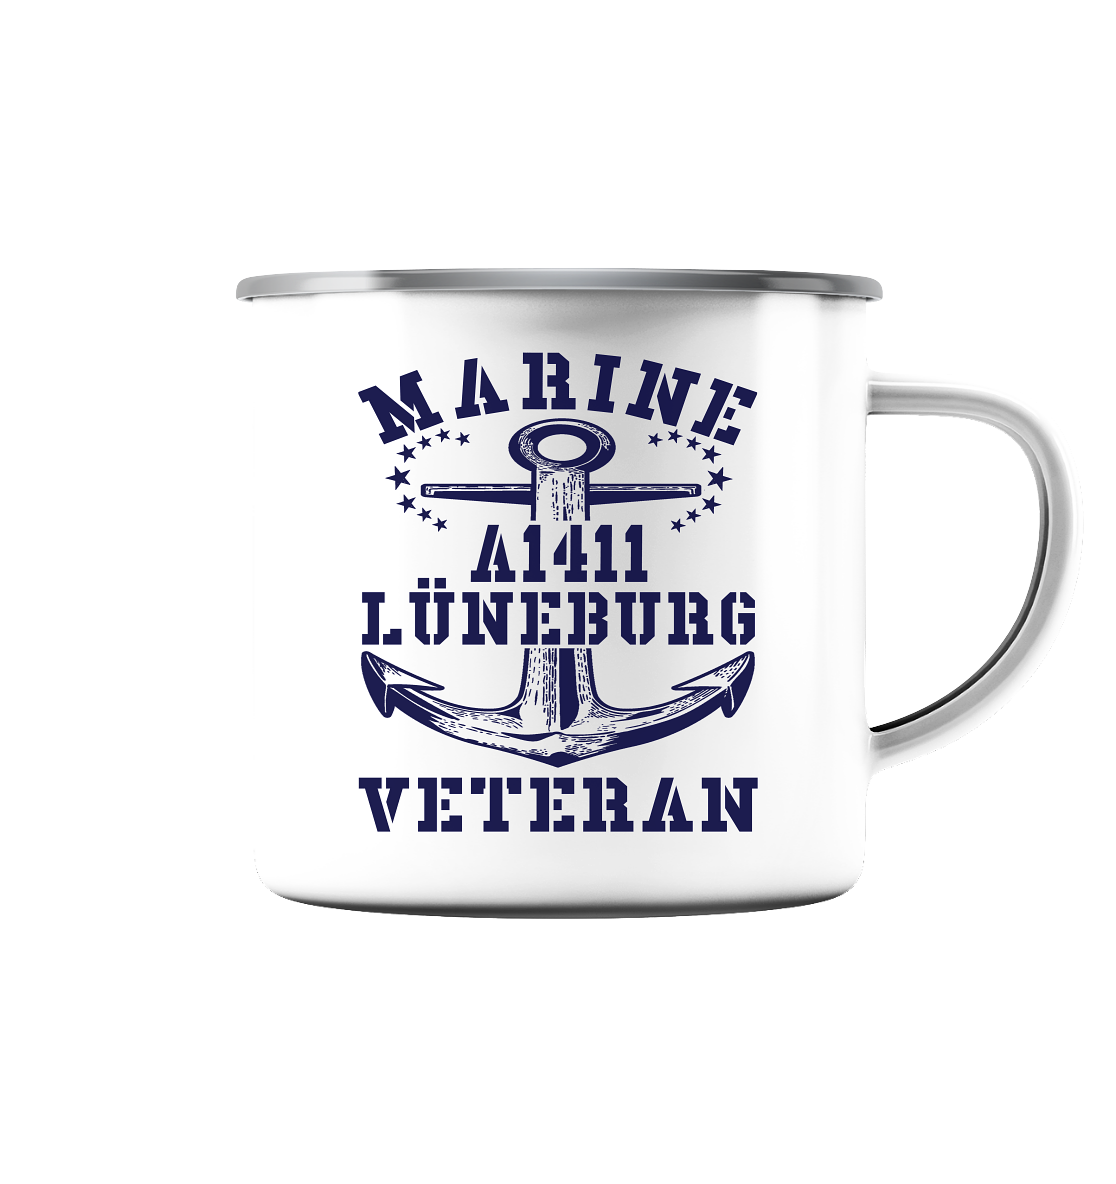 Troßschiff A1411 LÜNEBURG Marine Veteran - Emaille Tasse (Silber)